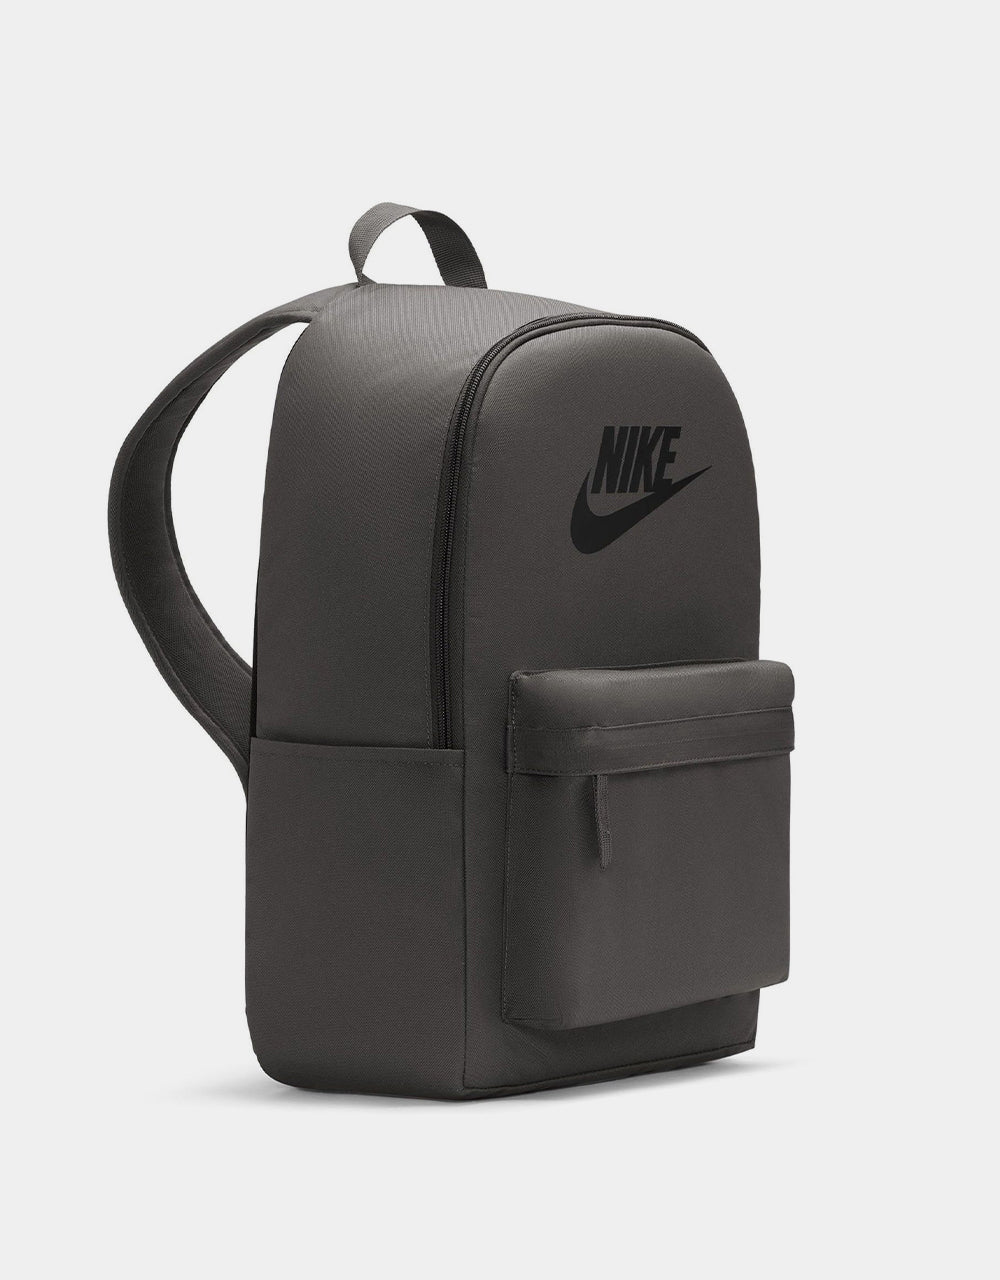 Nike SB Heritage Backpack - Medium Ash/Black